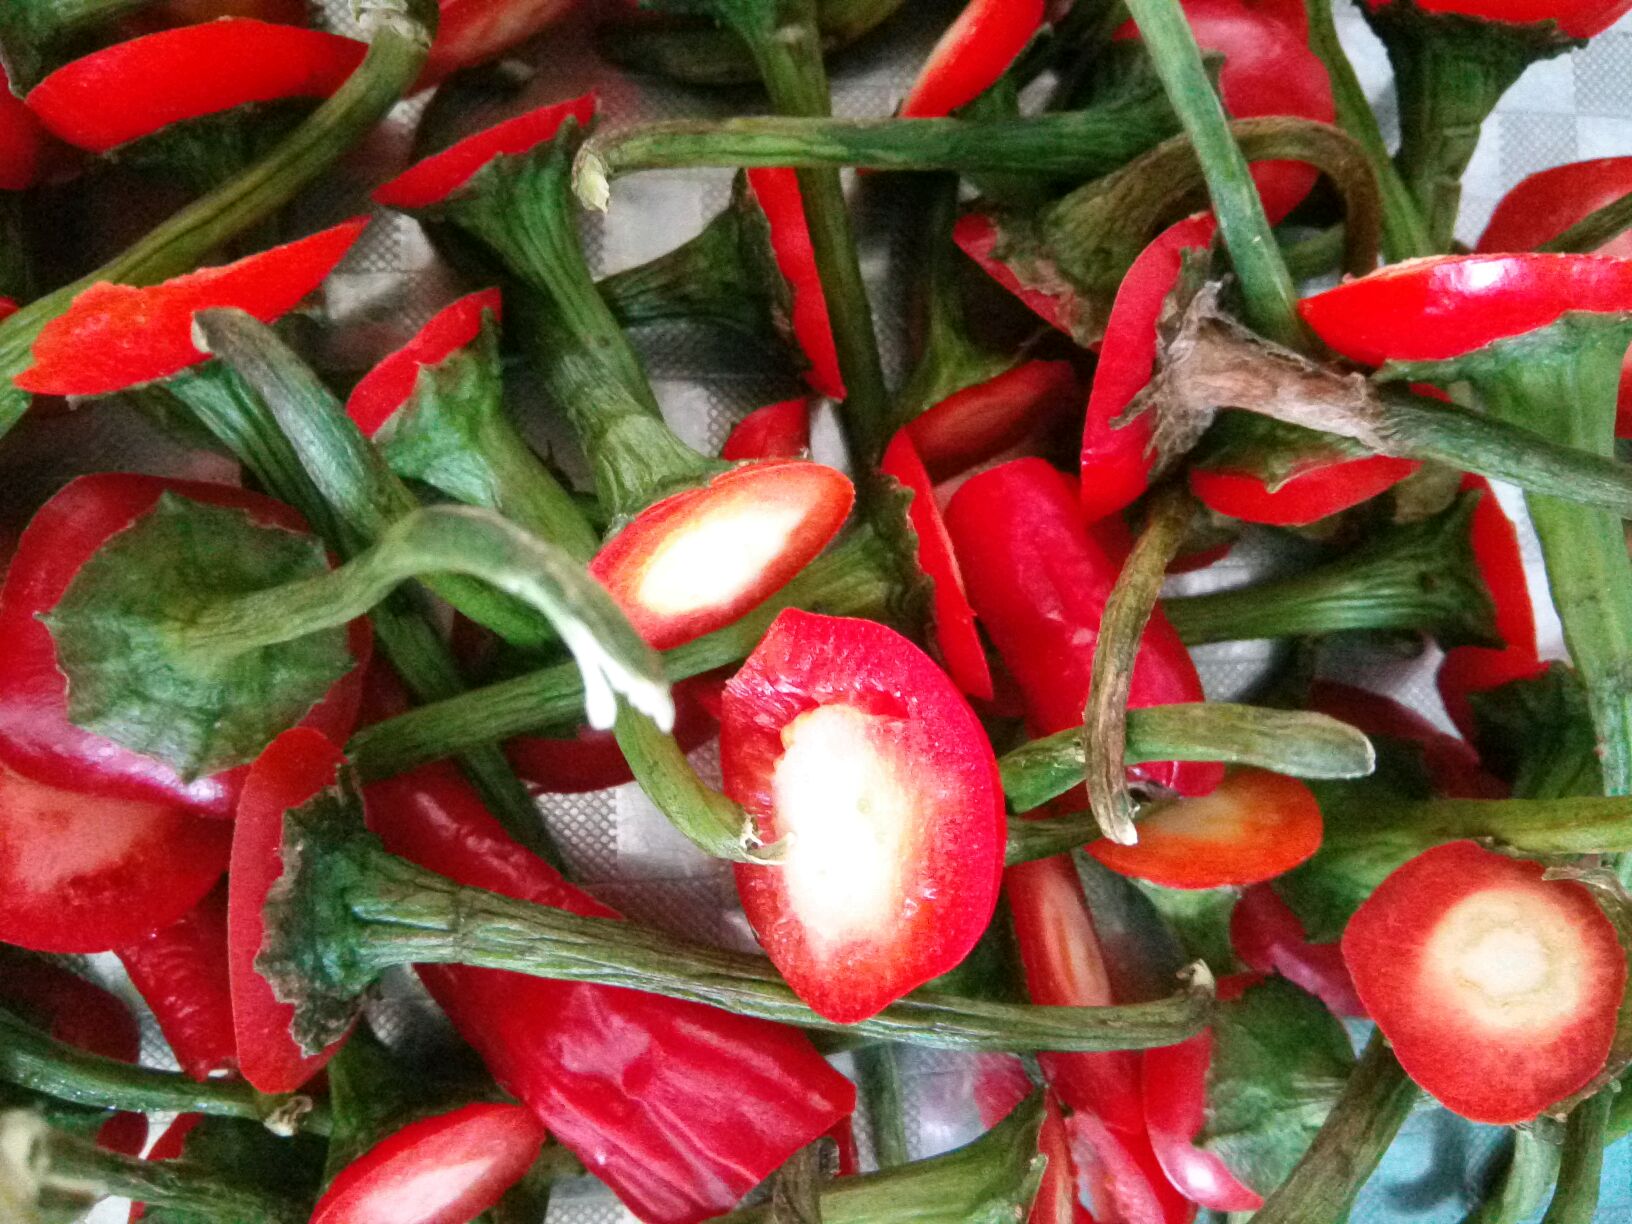 农村常见的5种辣椒，第4种最辣，第5种带甜味-常见疾病